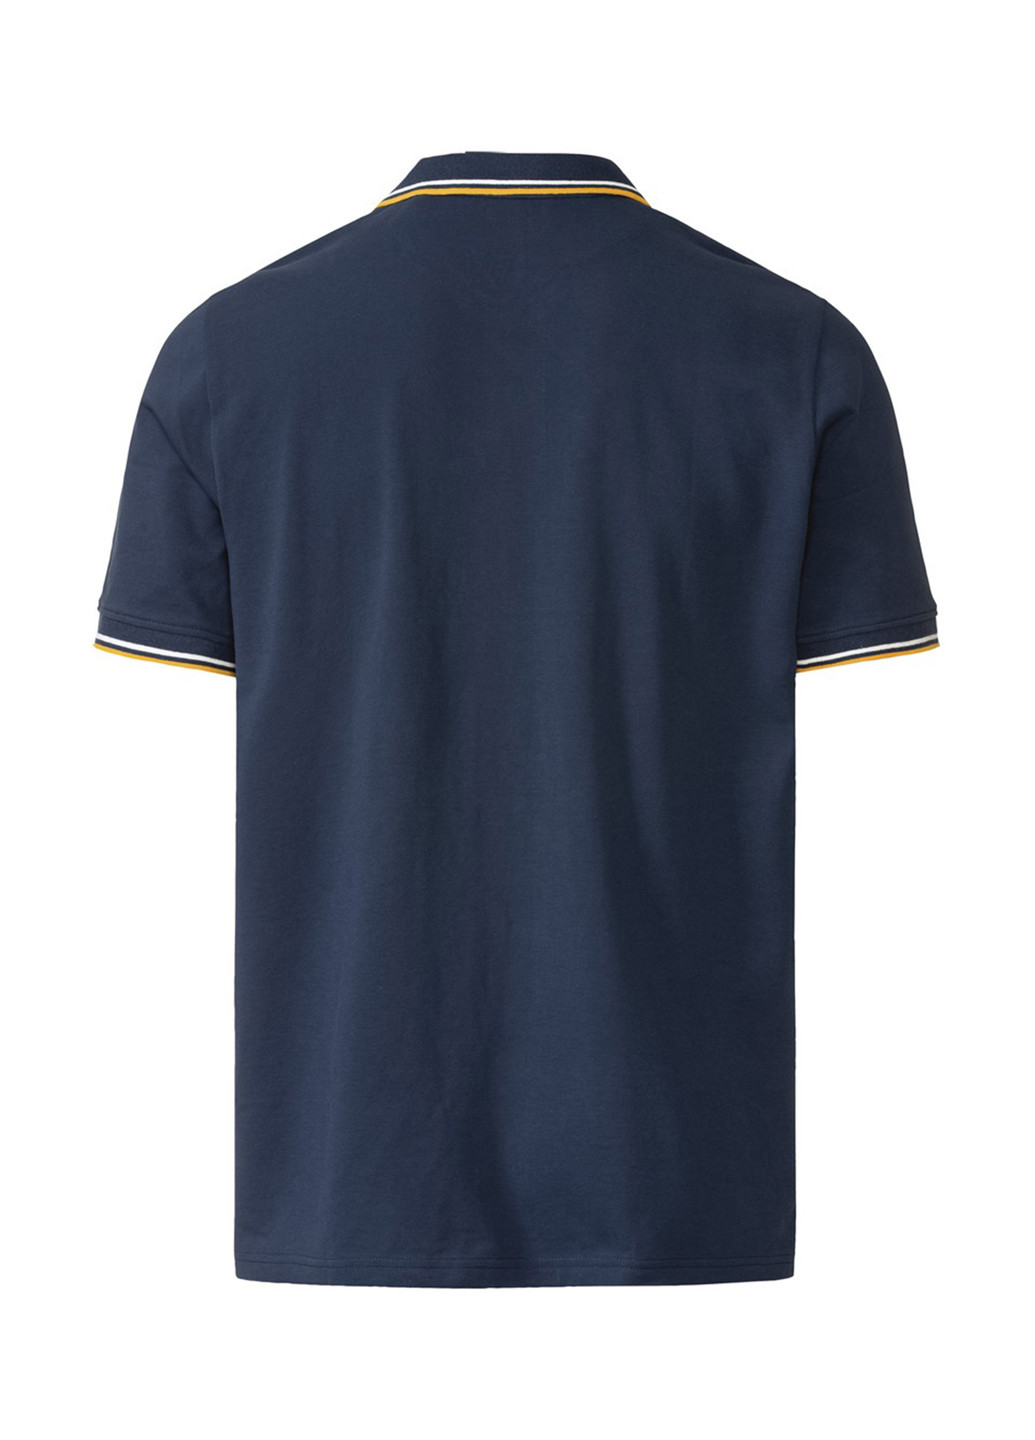 Синяя футболка-поло для мужчин Livergy с надписью